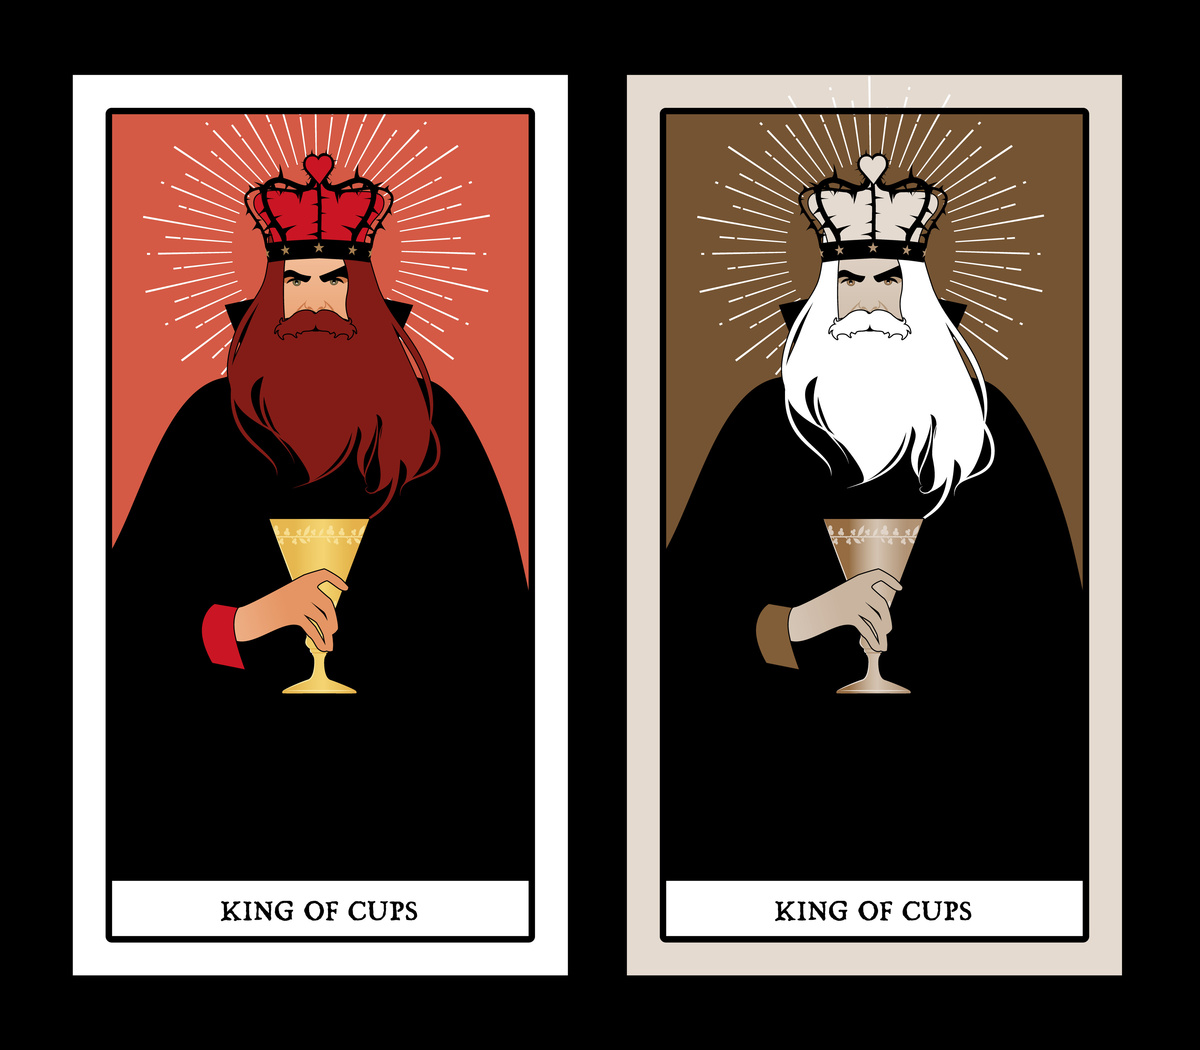 Duas cartas "king of cups" (rei de ouros) uma com o rei de barba ruiva e a outra com o rei de barba branca